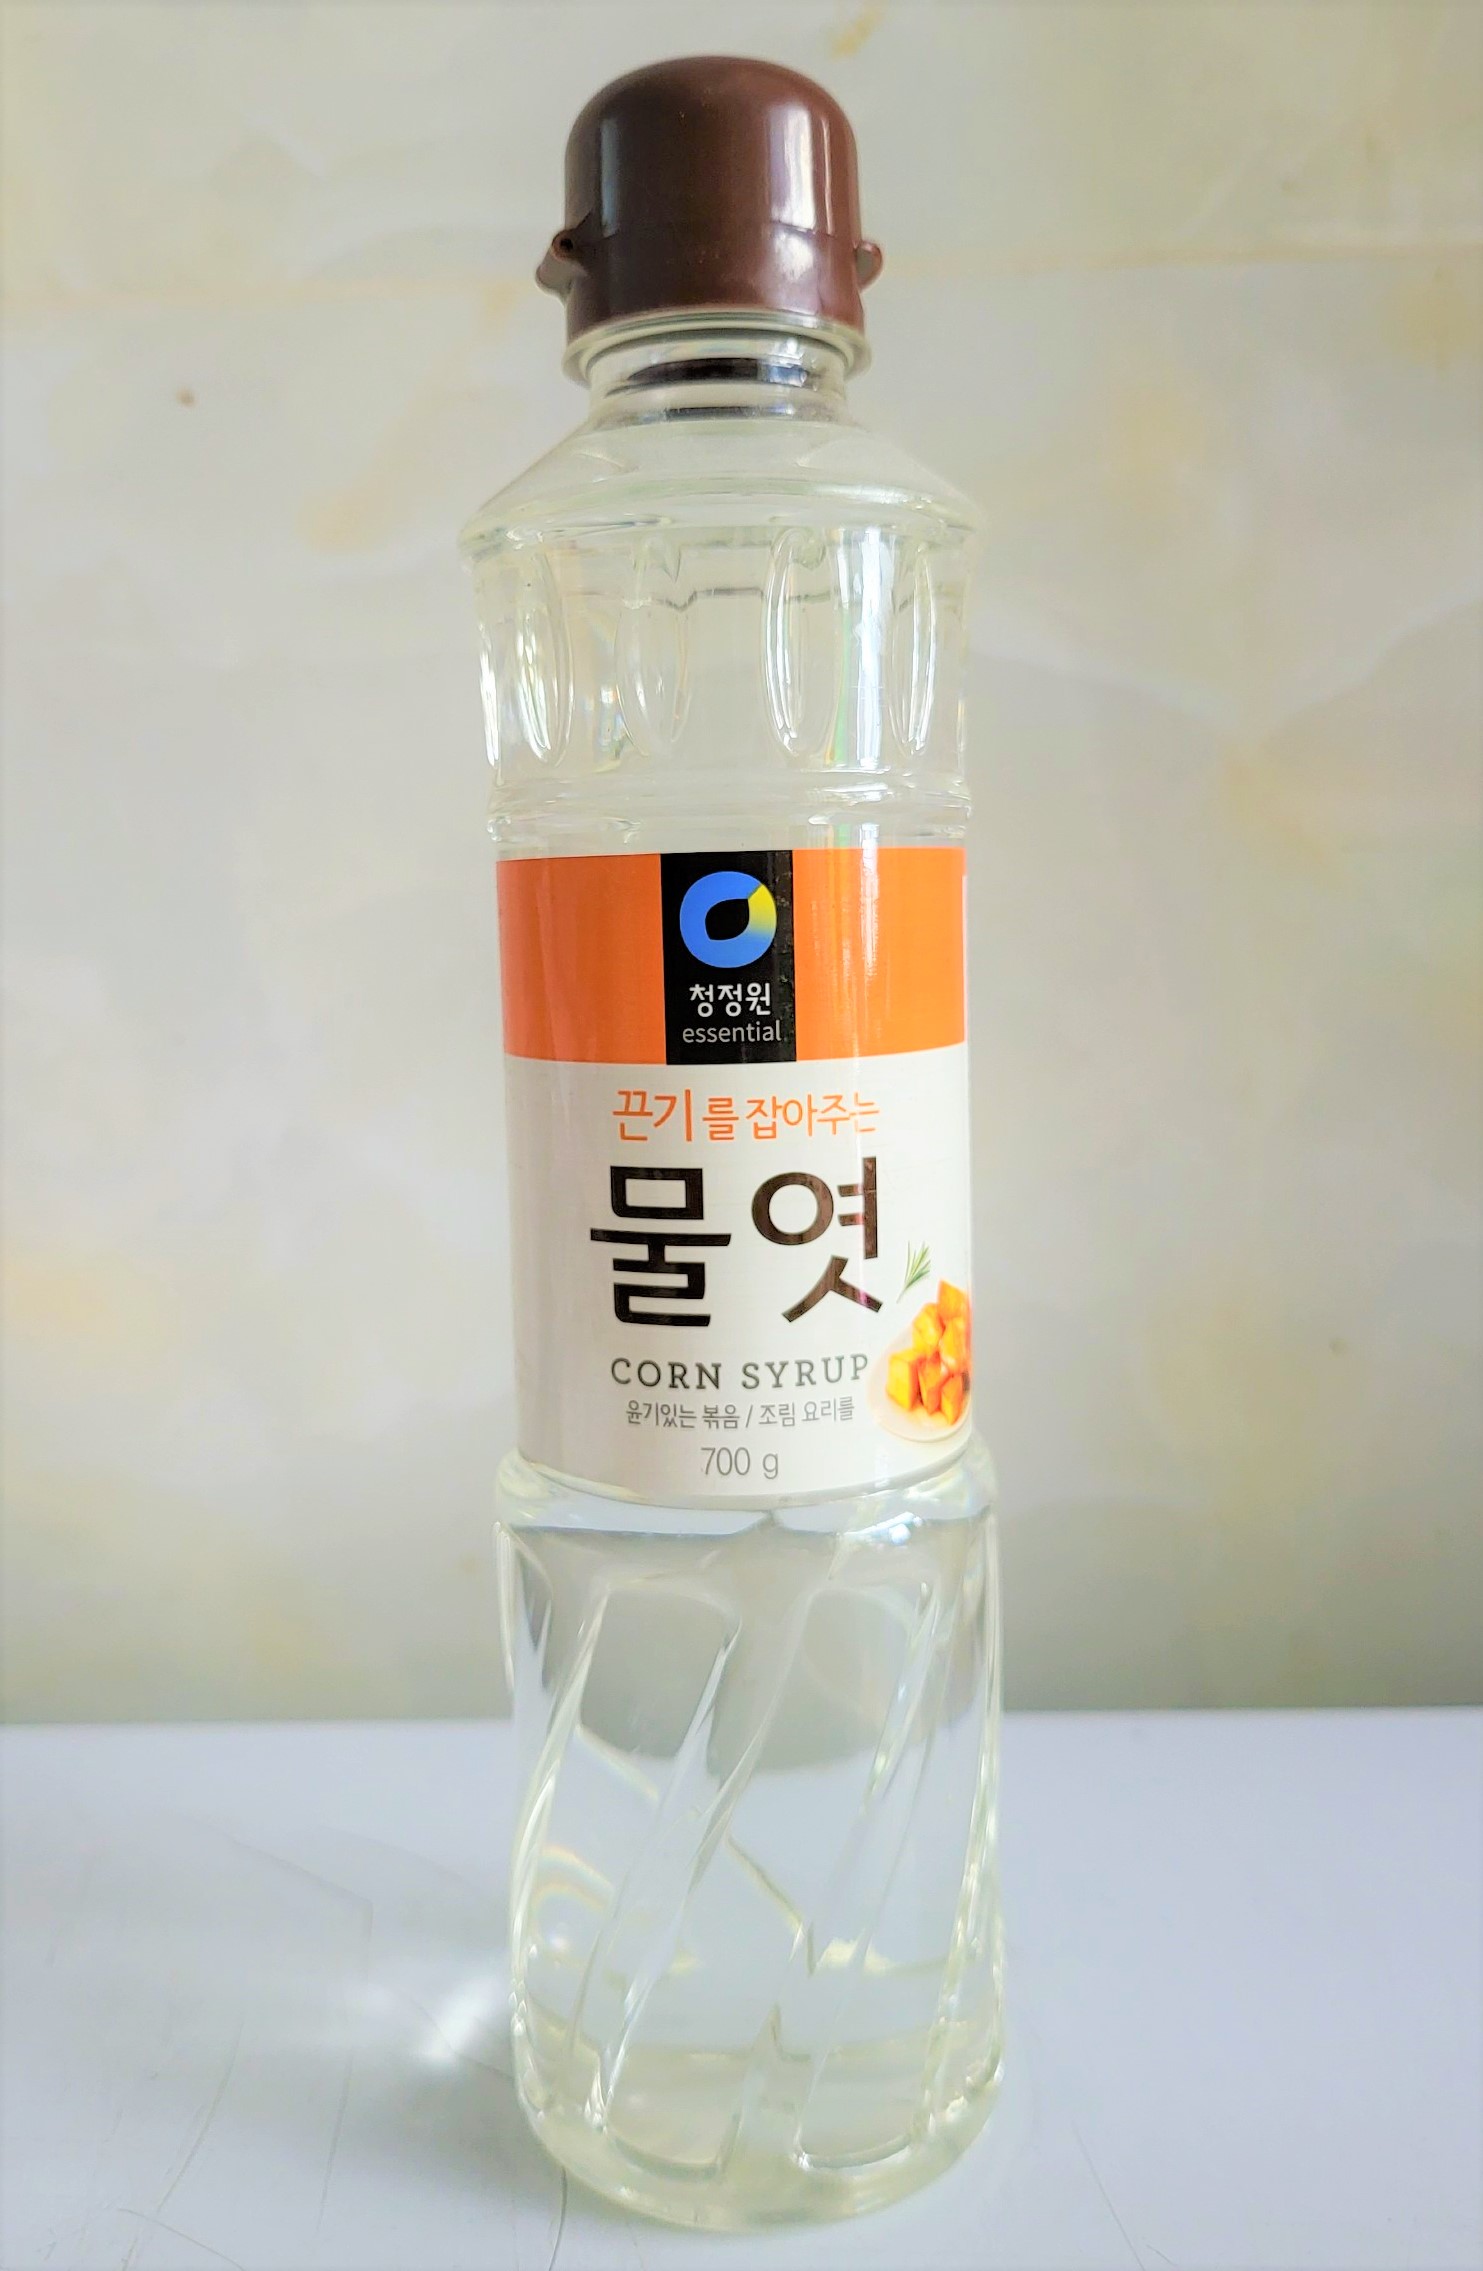 chai 700g MẠCH NHA mật ngô nấu ăn DAESANG Miwon Corn Syrup